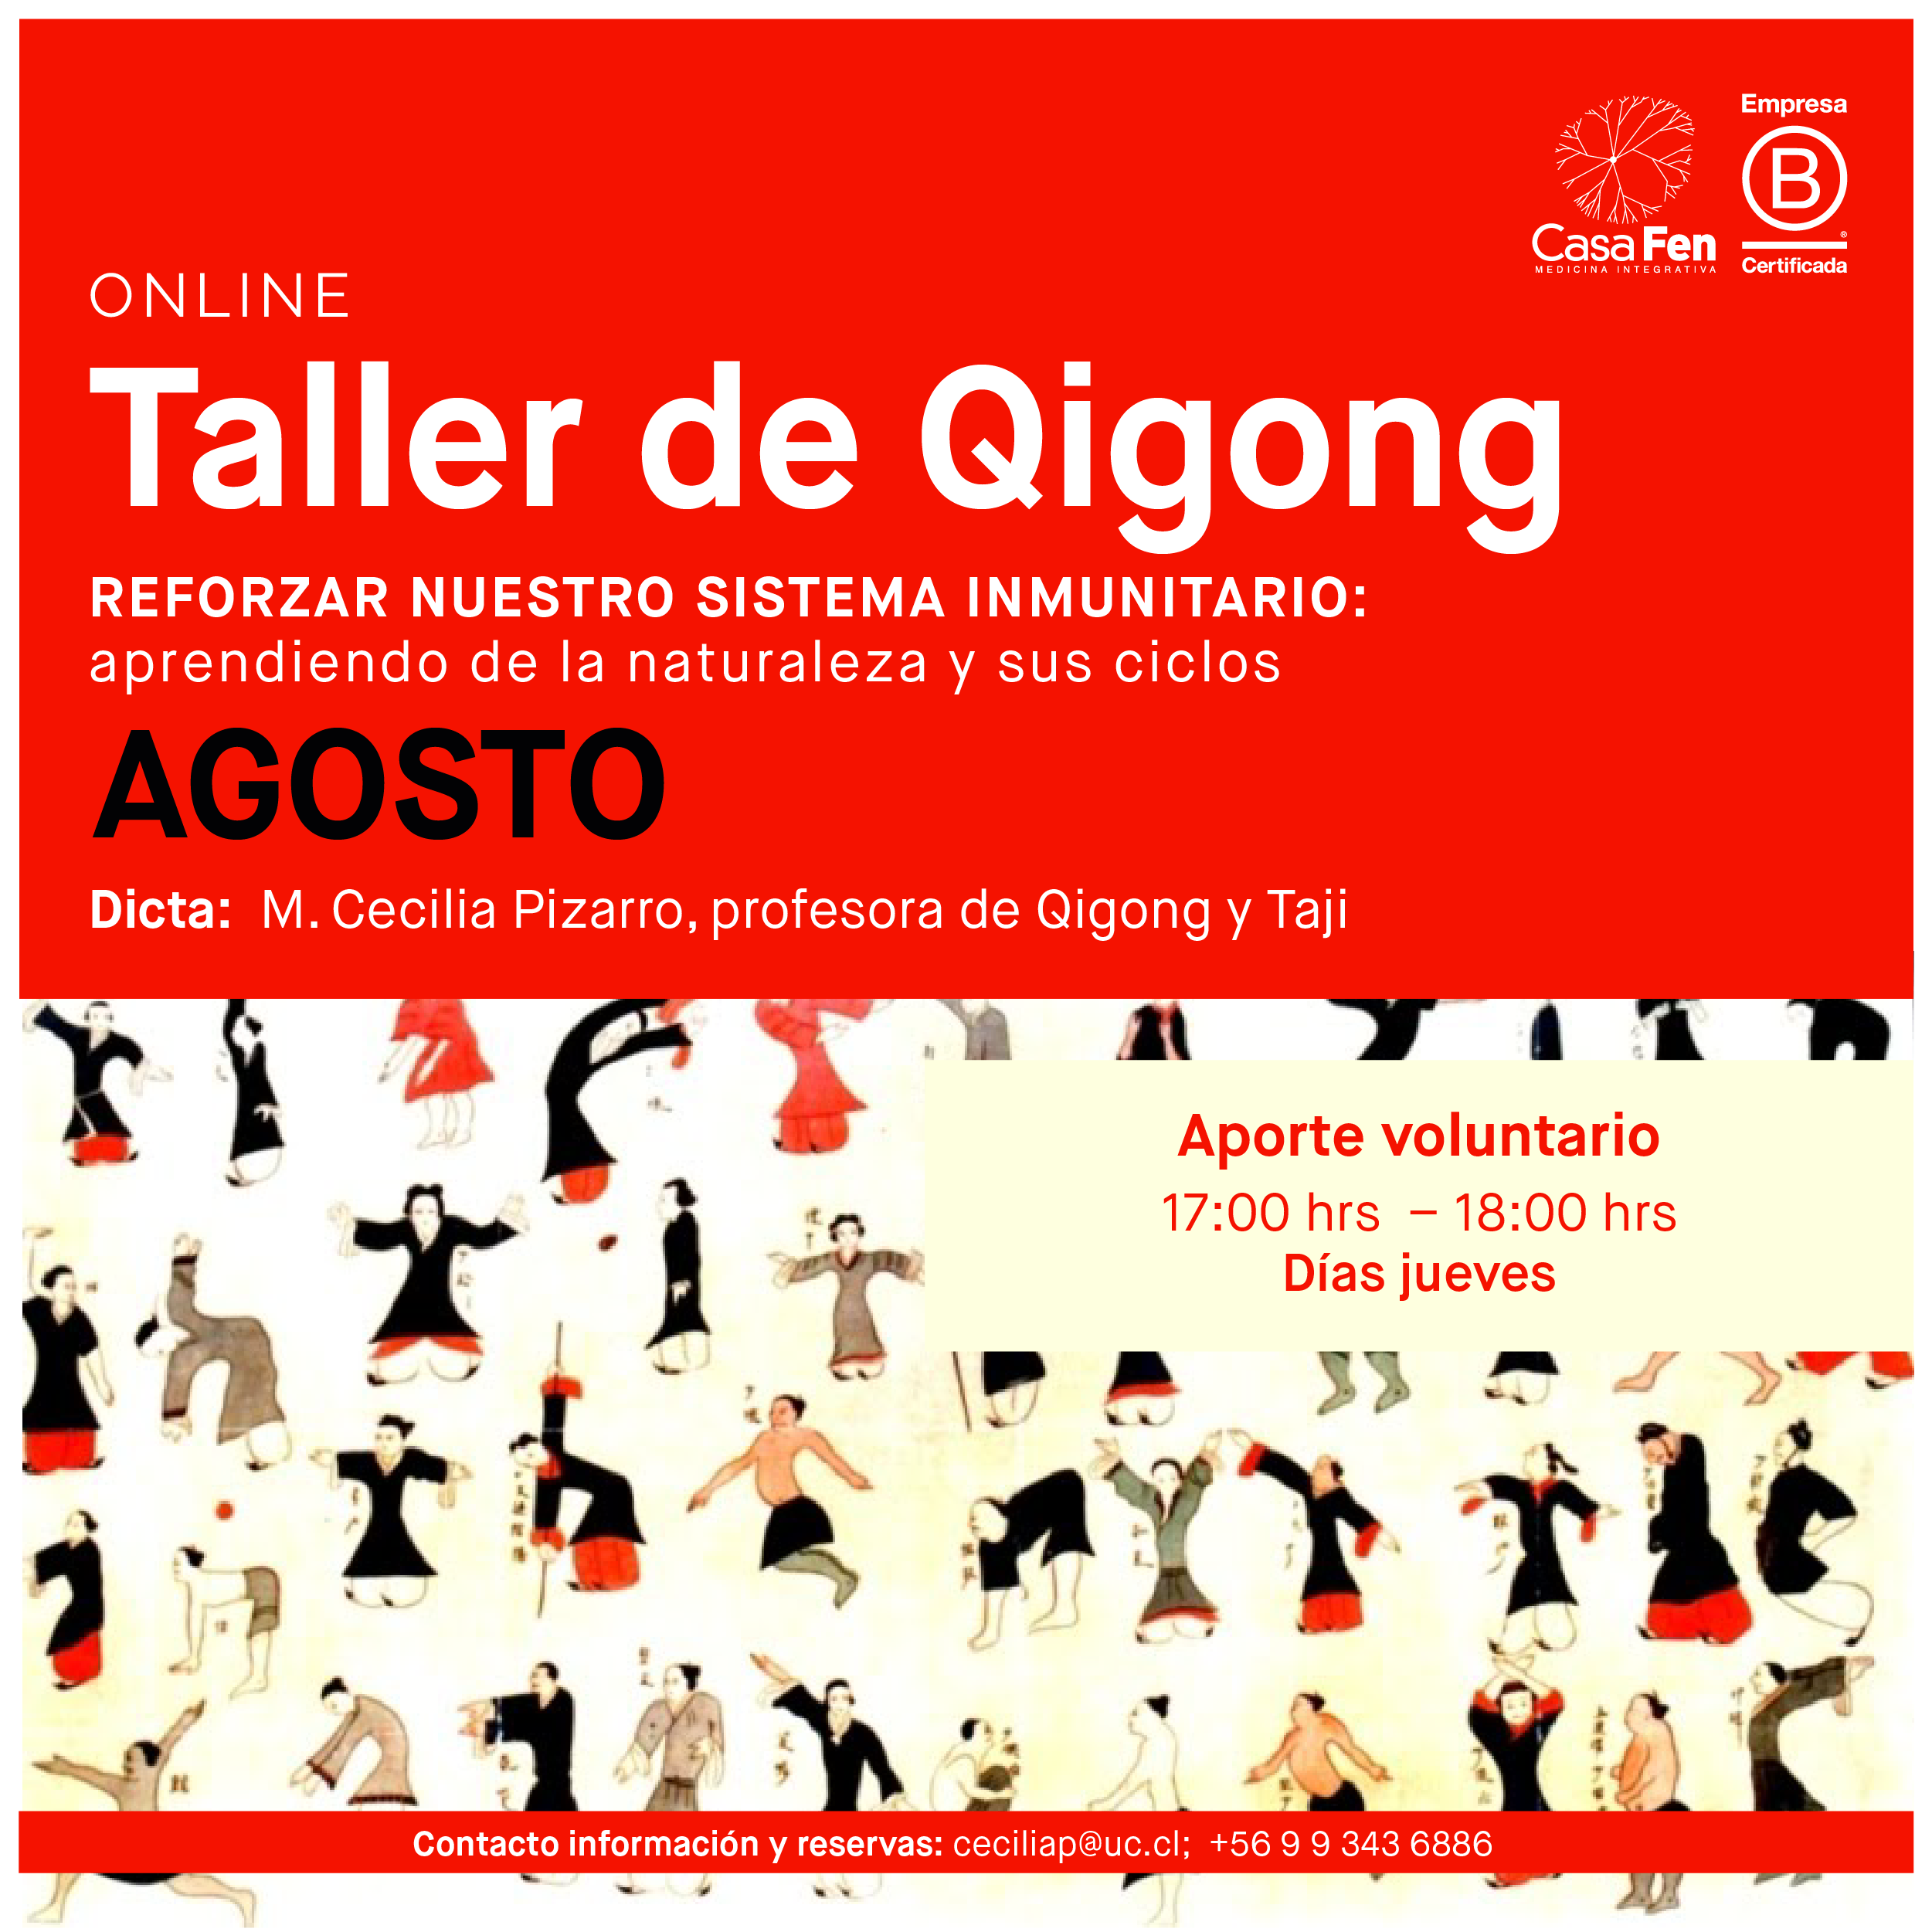 Taller de Qigong Agosto-Casafen